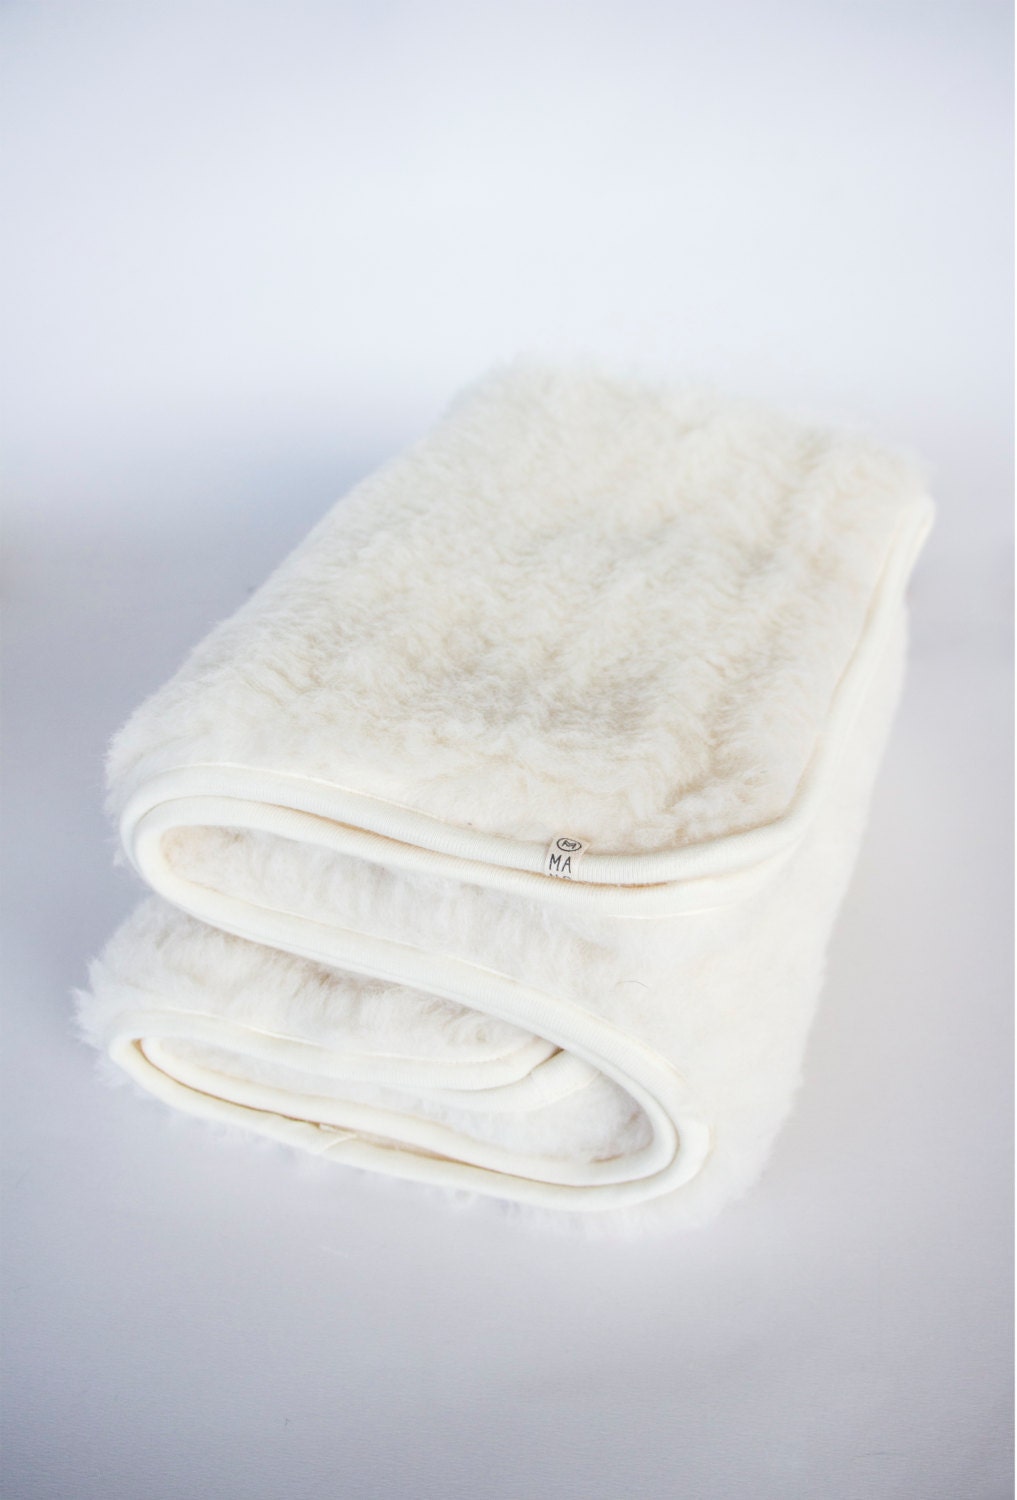 Wool Duvet Insert, Queen Wool Comforter, Linen Quilt, Warm Blanket, Winter  Blanket, Wool Bedding, Winter Comforter, Wool Blanket,duvet Cover 